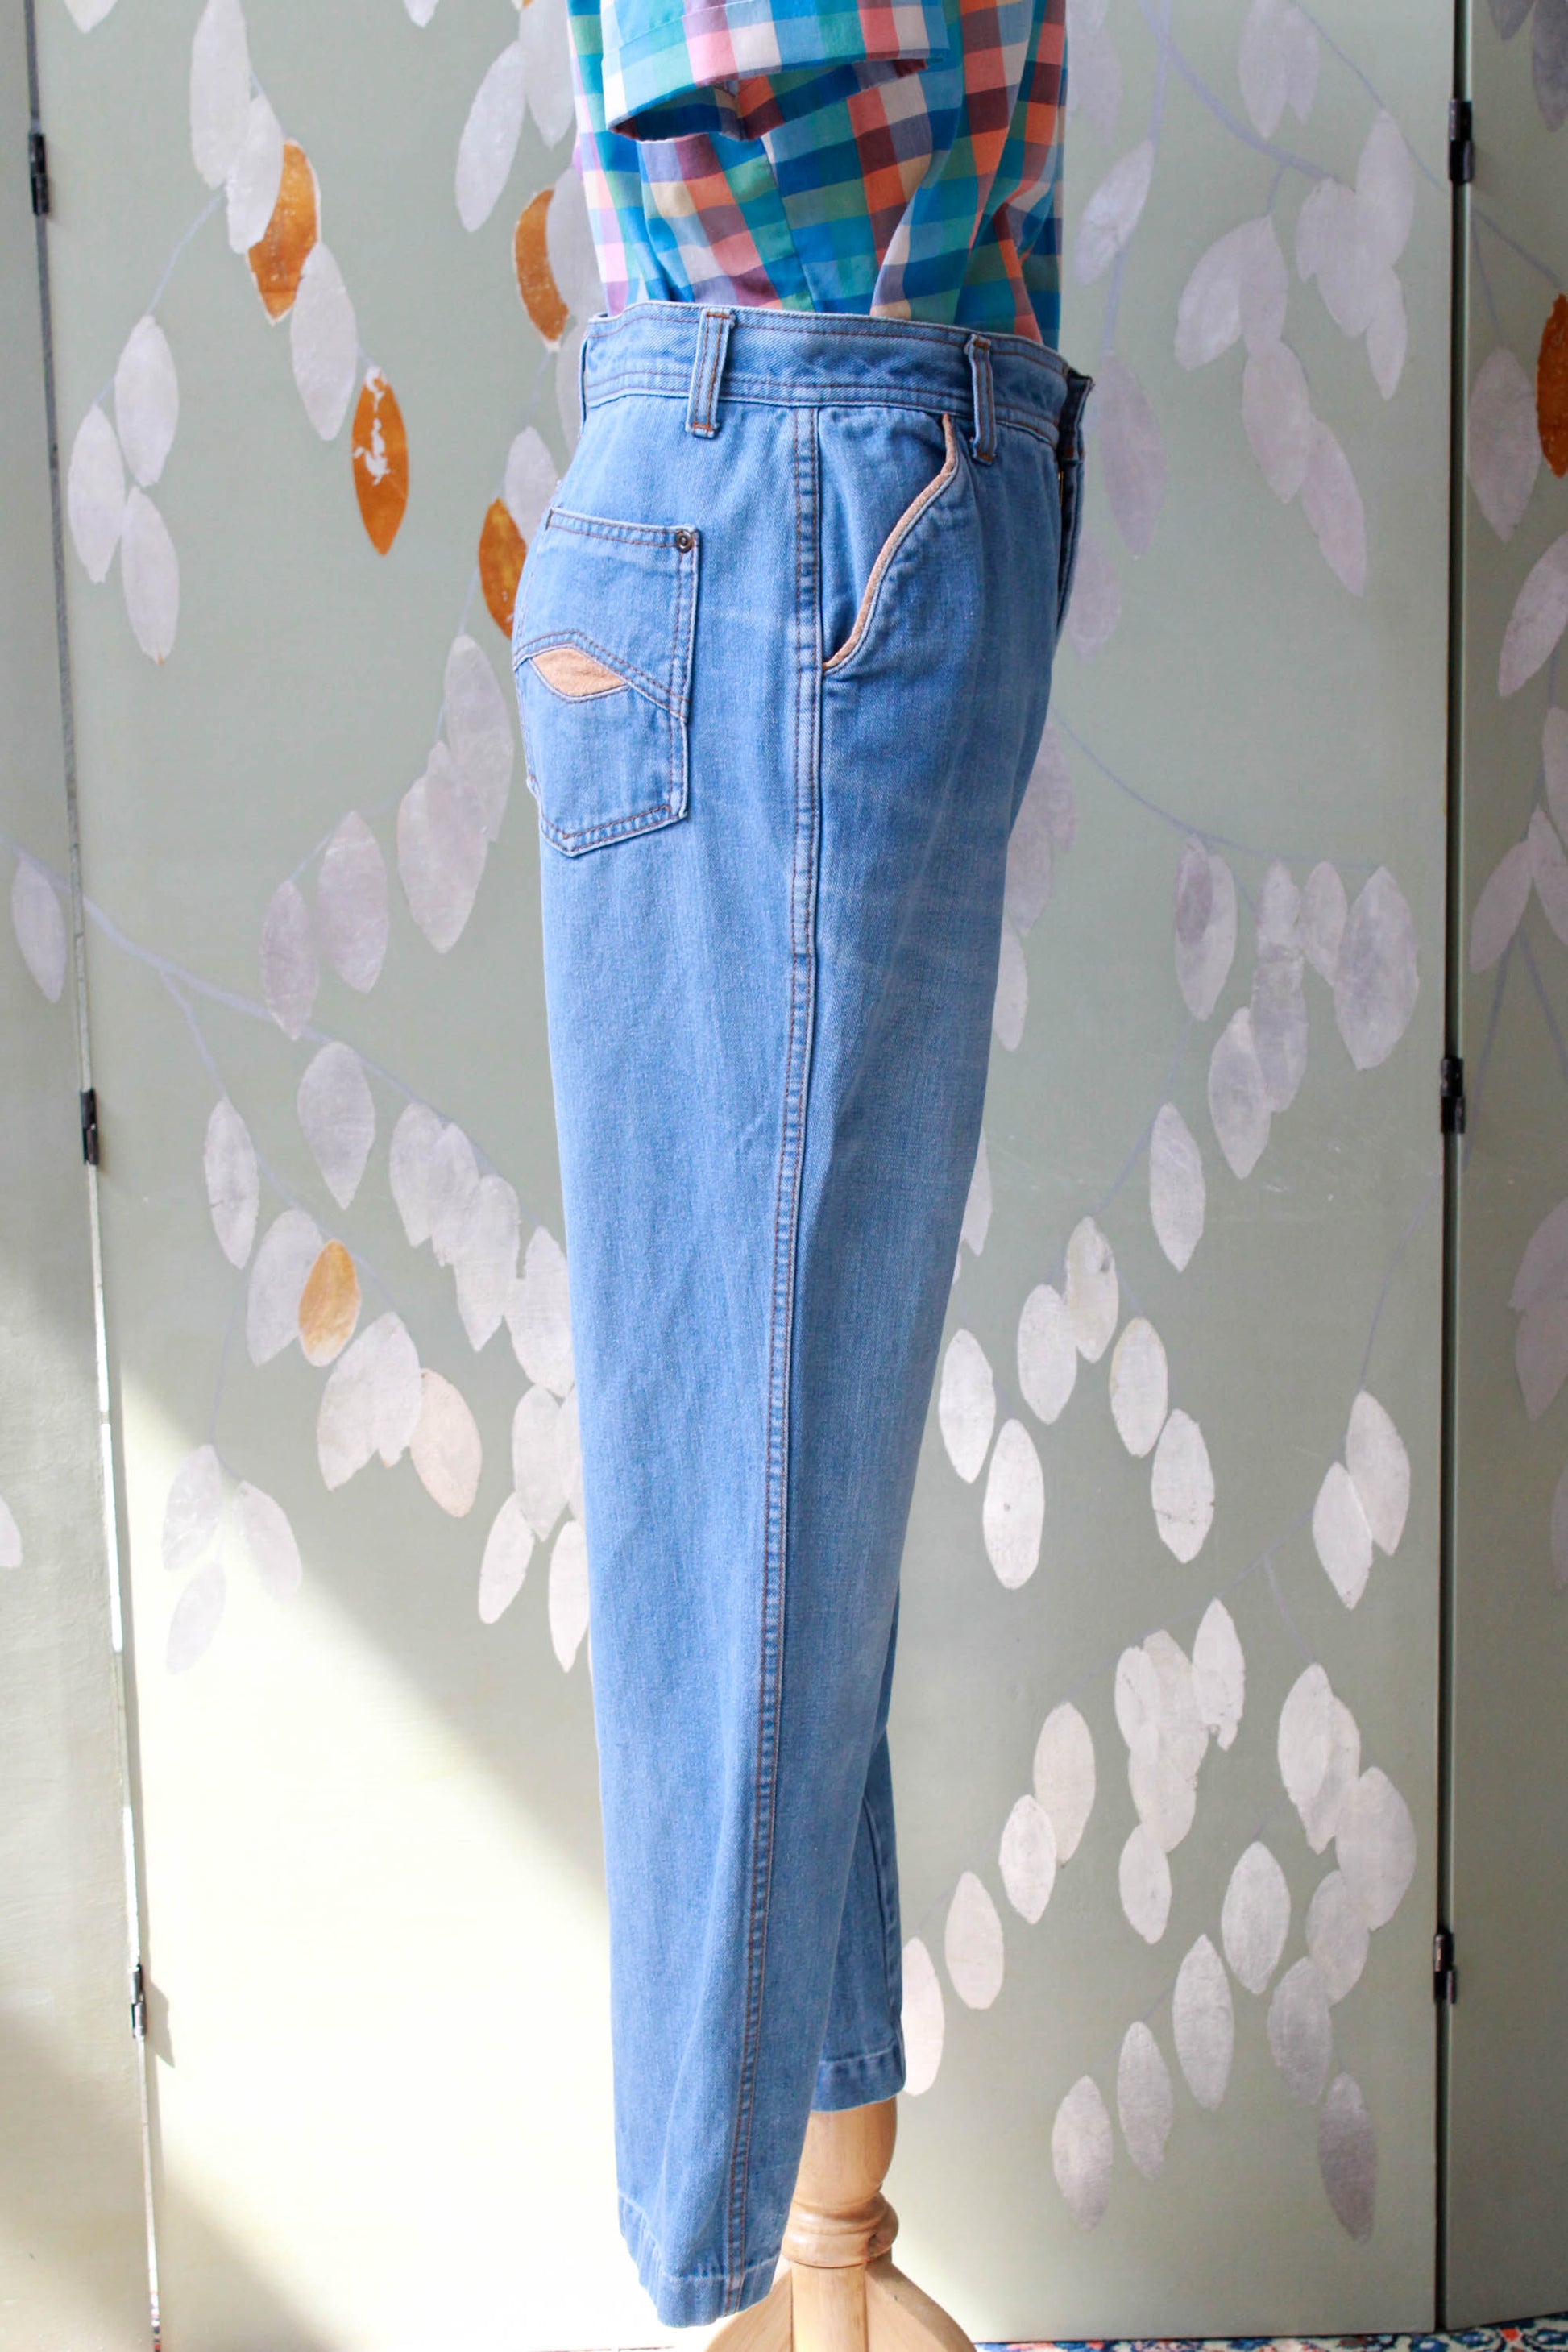 1970s lightwash flare jeans high waisted, made by k mart 100% cotton vintage denim